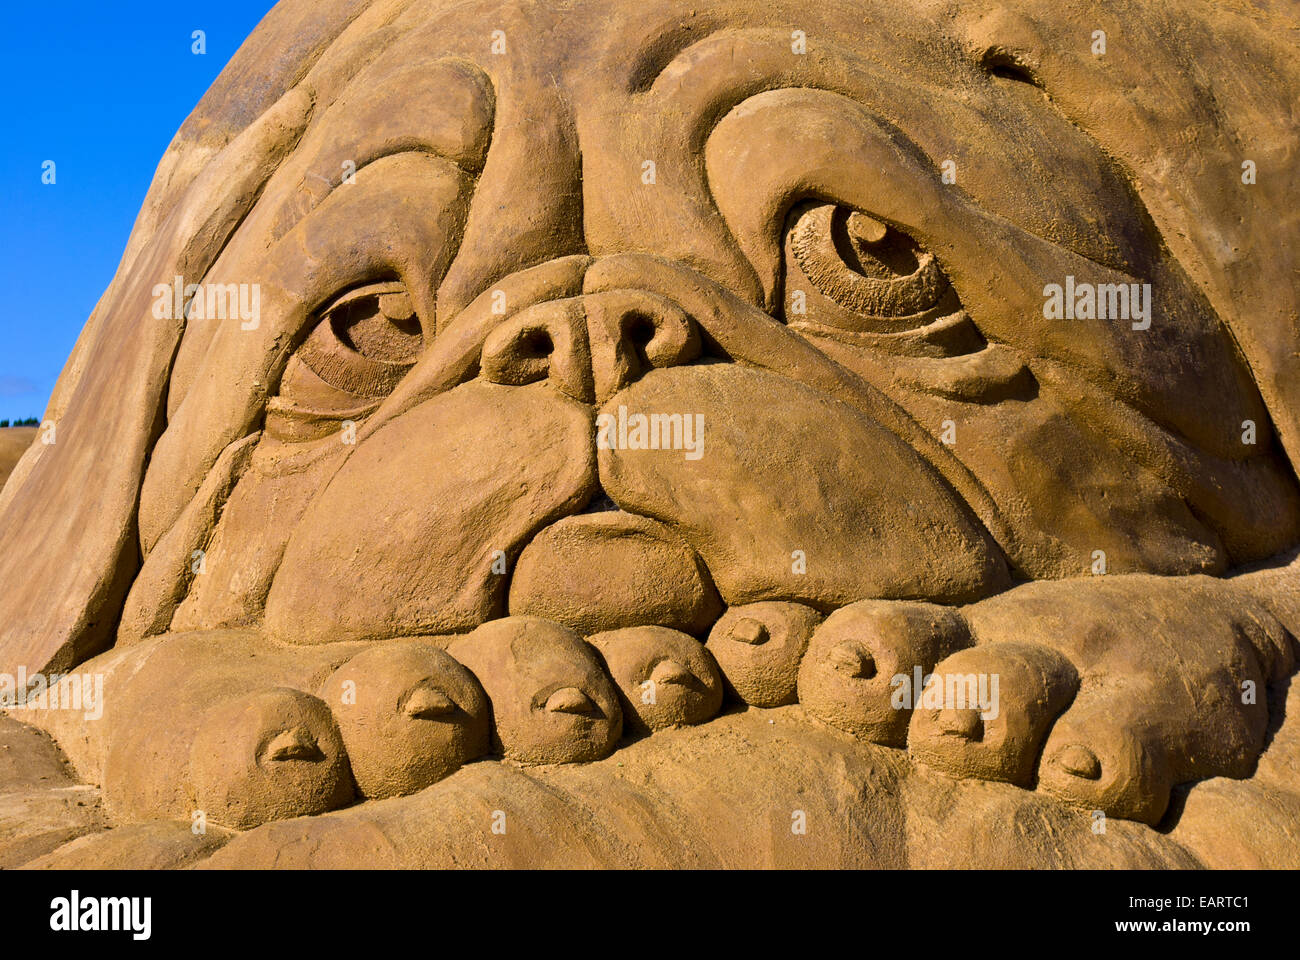 Un professionnel d'une sculpture de sable droopy eyed dog avec saggy bajoues. Banque D'Images